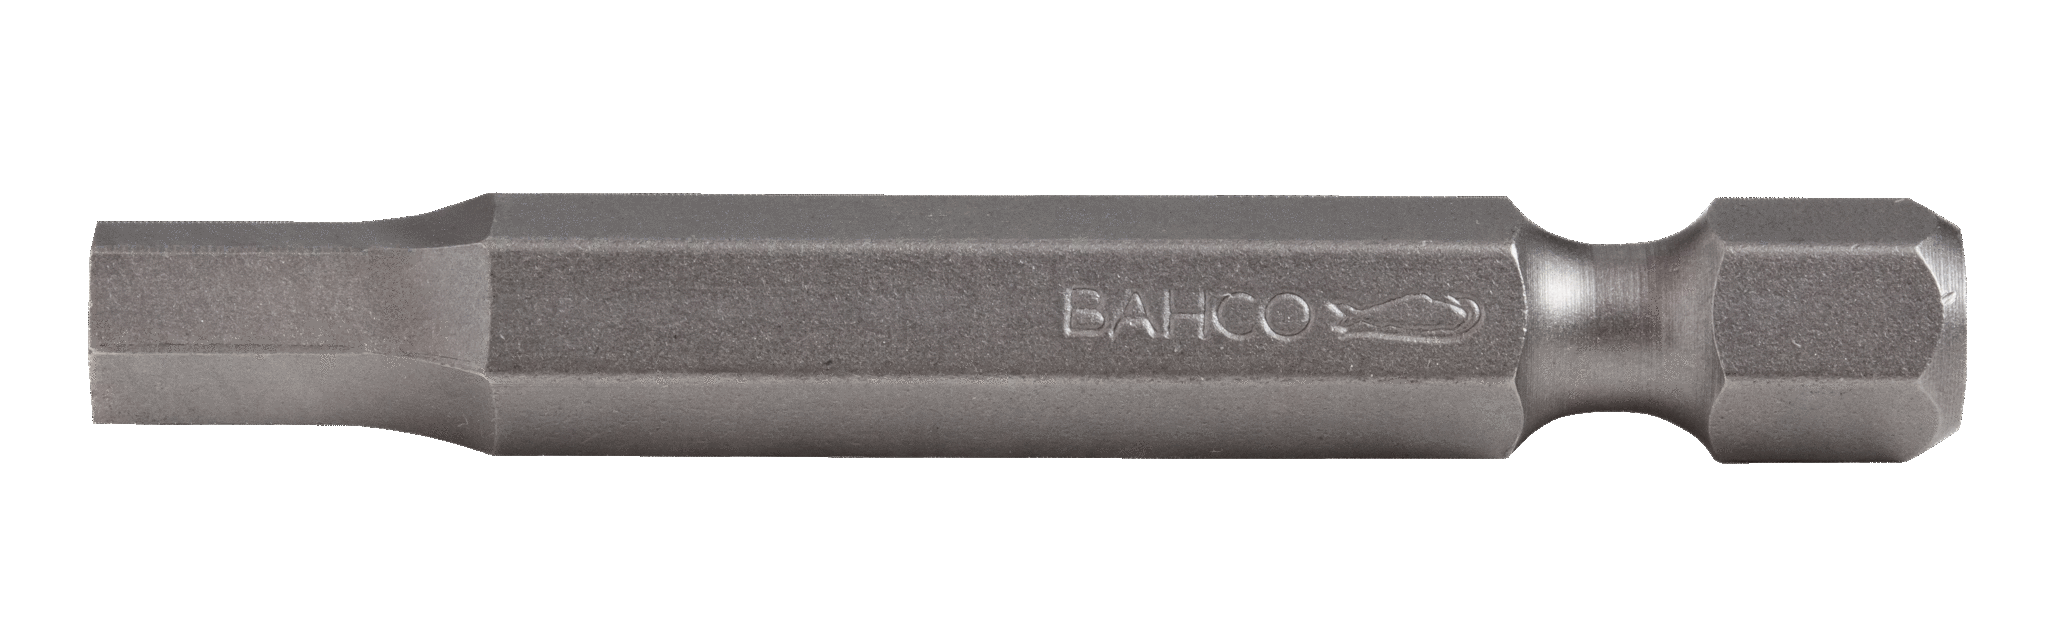 Стандартные биты для отверток под винты с шестигранной головкой, дюймовые размеры, 50 мм BAHCO 59S/50H1/16